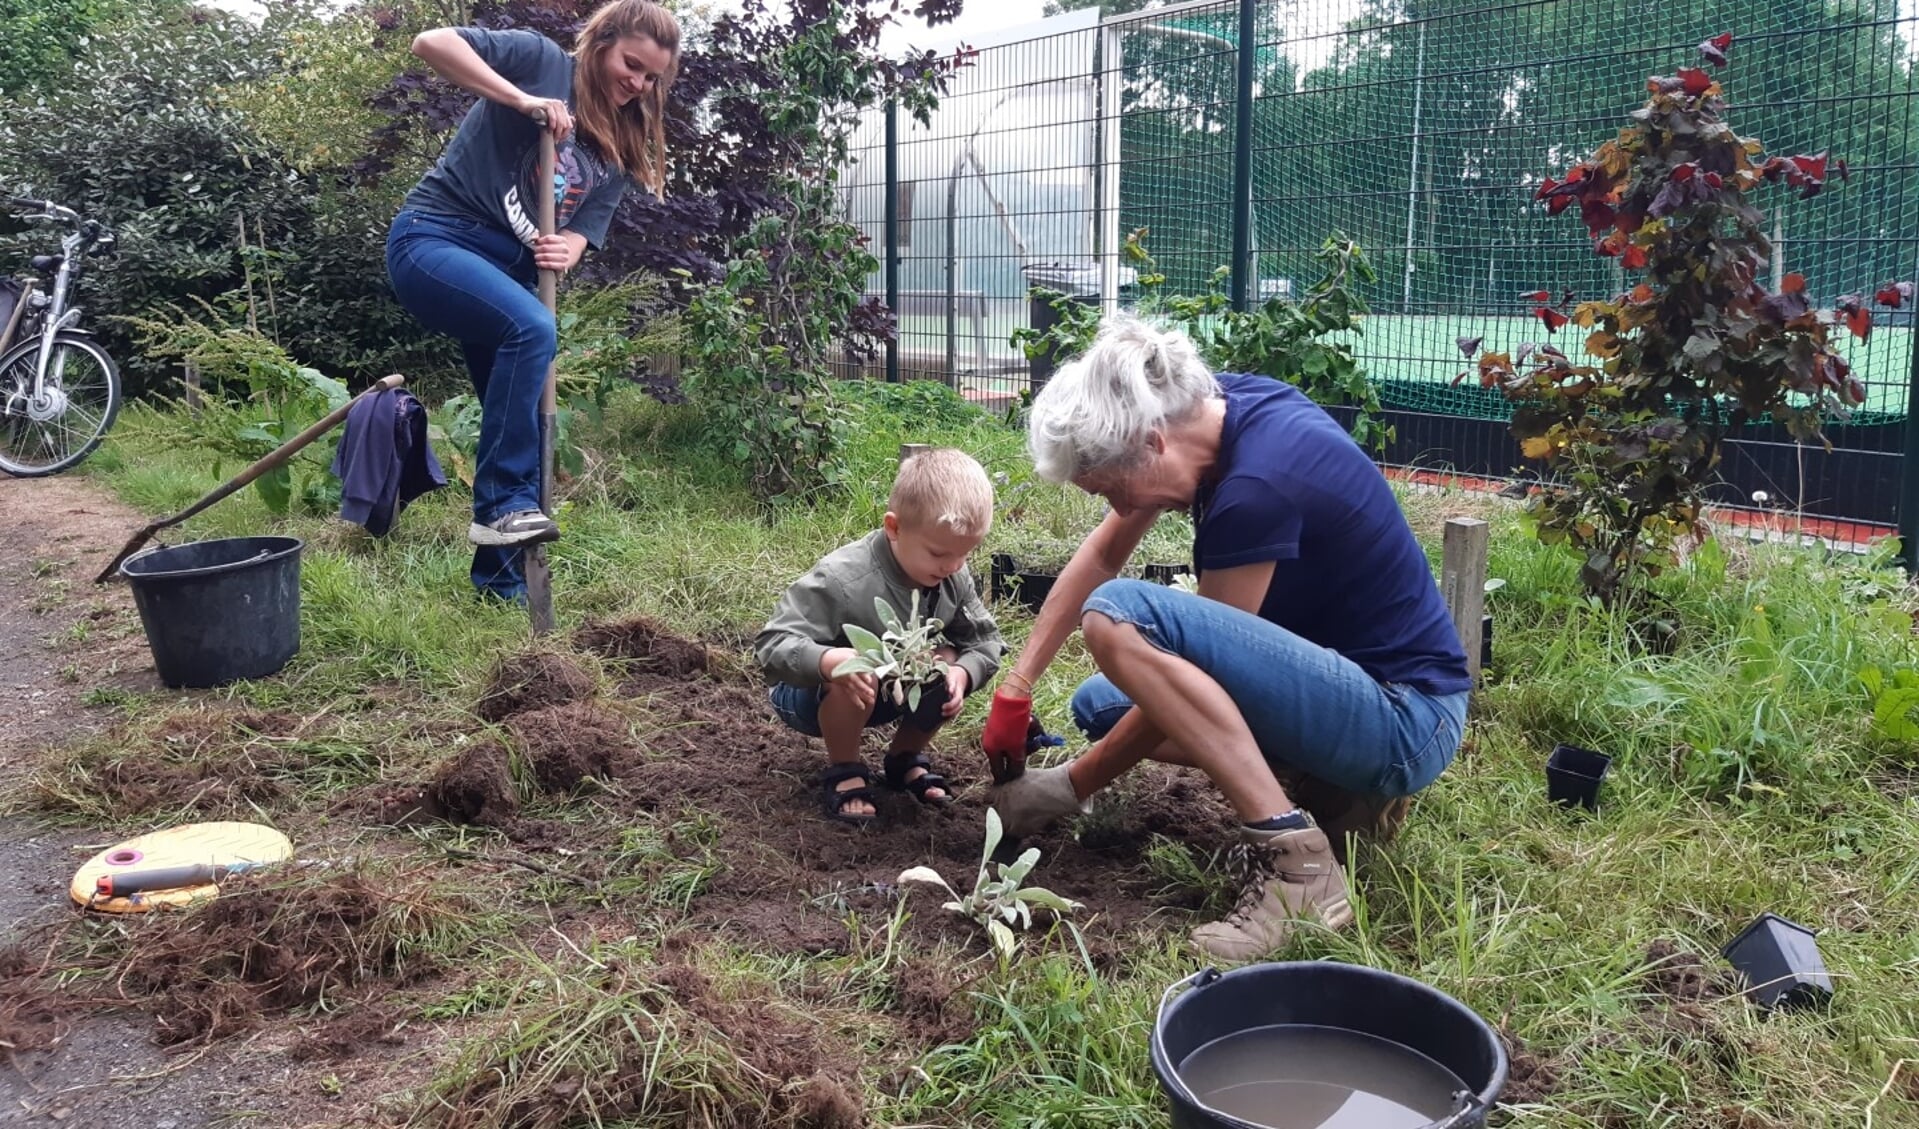 • Vrijwilligers van KNIJ – met kinderen – hebben onverkocht groen van Intra geplant langs de hazelaarroute.